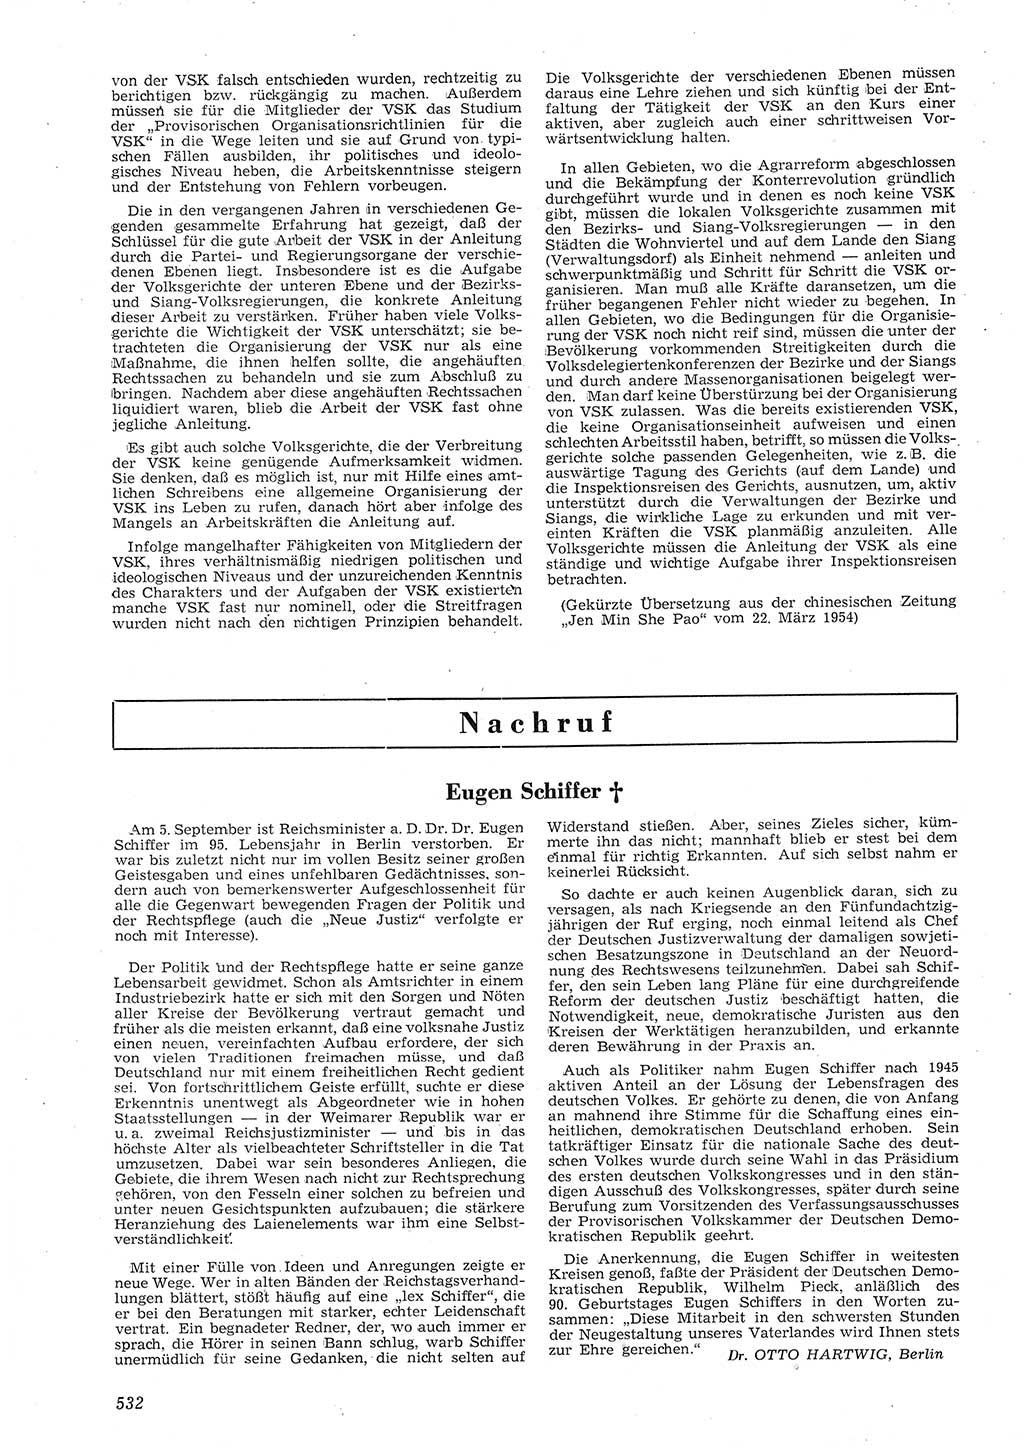 Neue Justiz (NJ), Zeitschrift für Recht und Rechtswissenschaft [Deutsche Demokratische Republik (DDR)], 8. Jahrgang 1954, Seite 532 (NJ DDR 1954, S. 532)